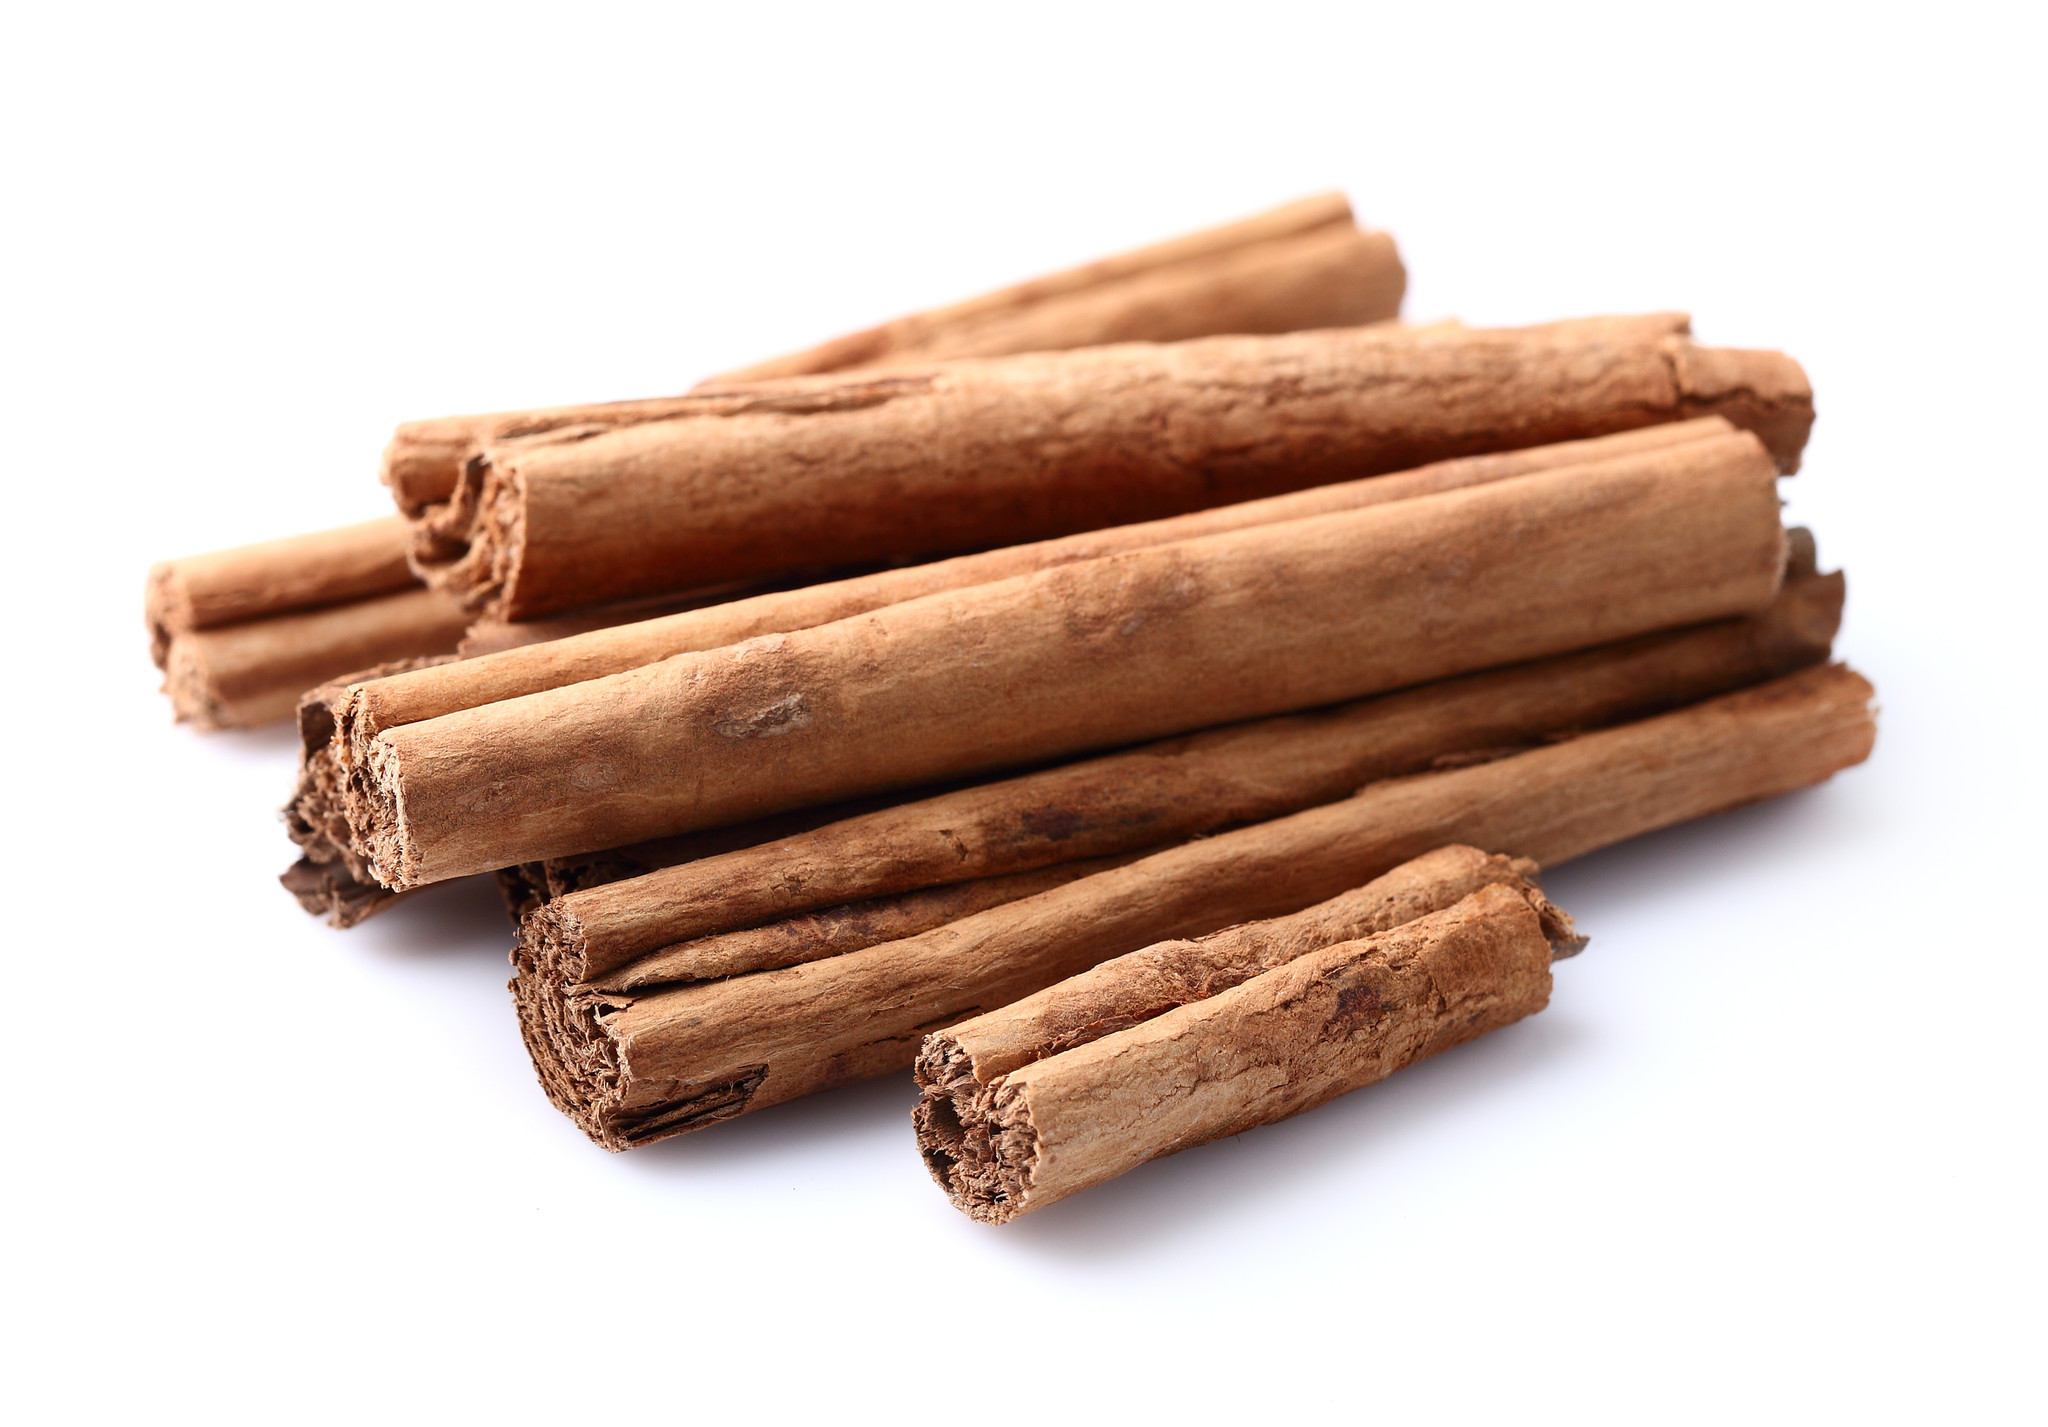 Tvak: Cinnamomum zeylanicum - Cinnamon bark